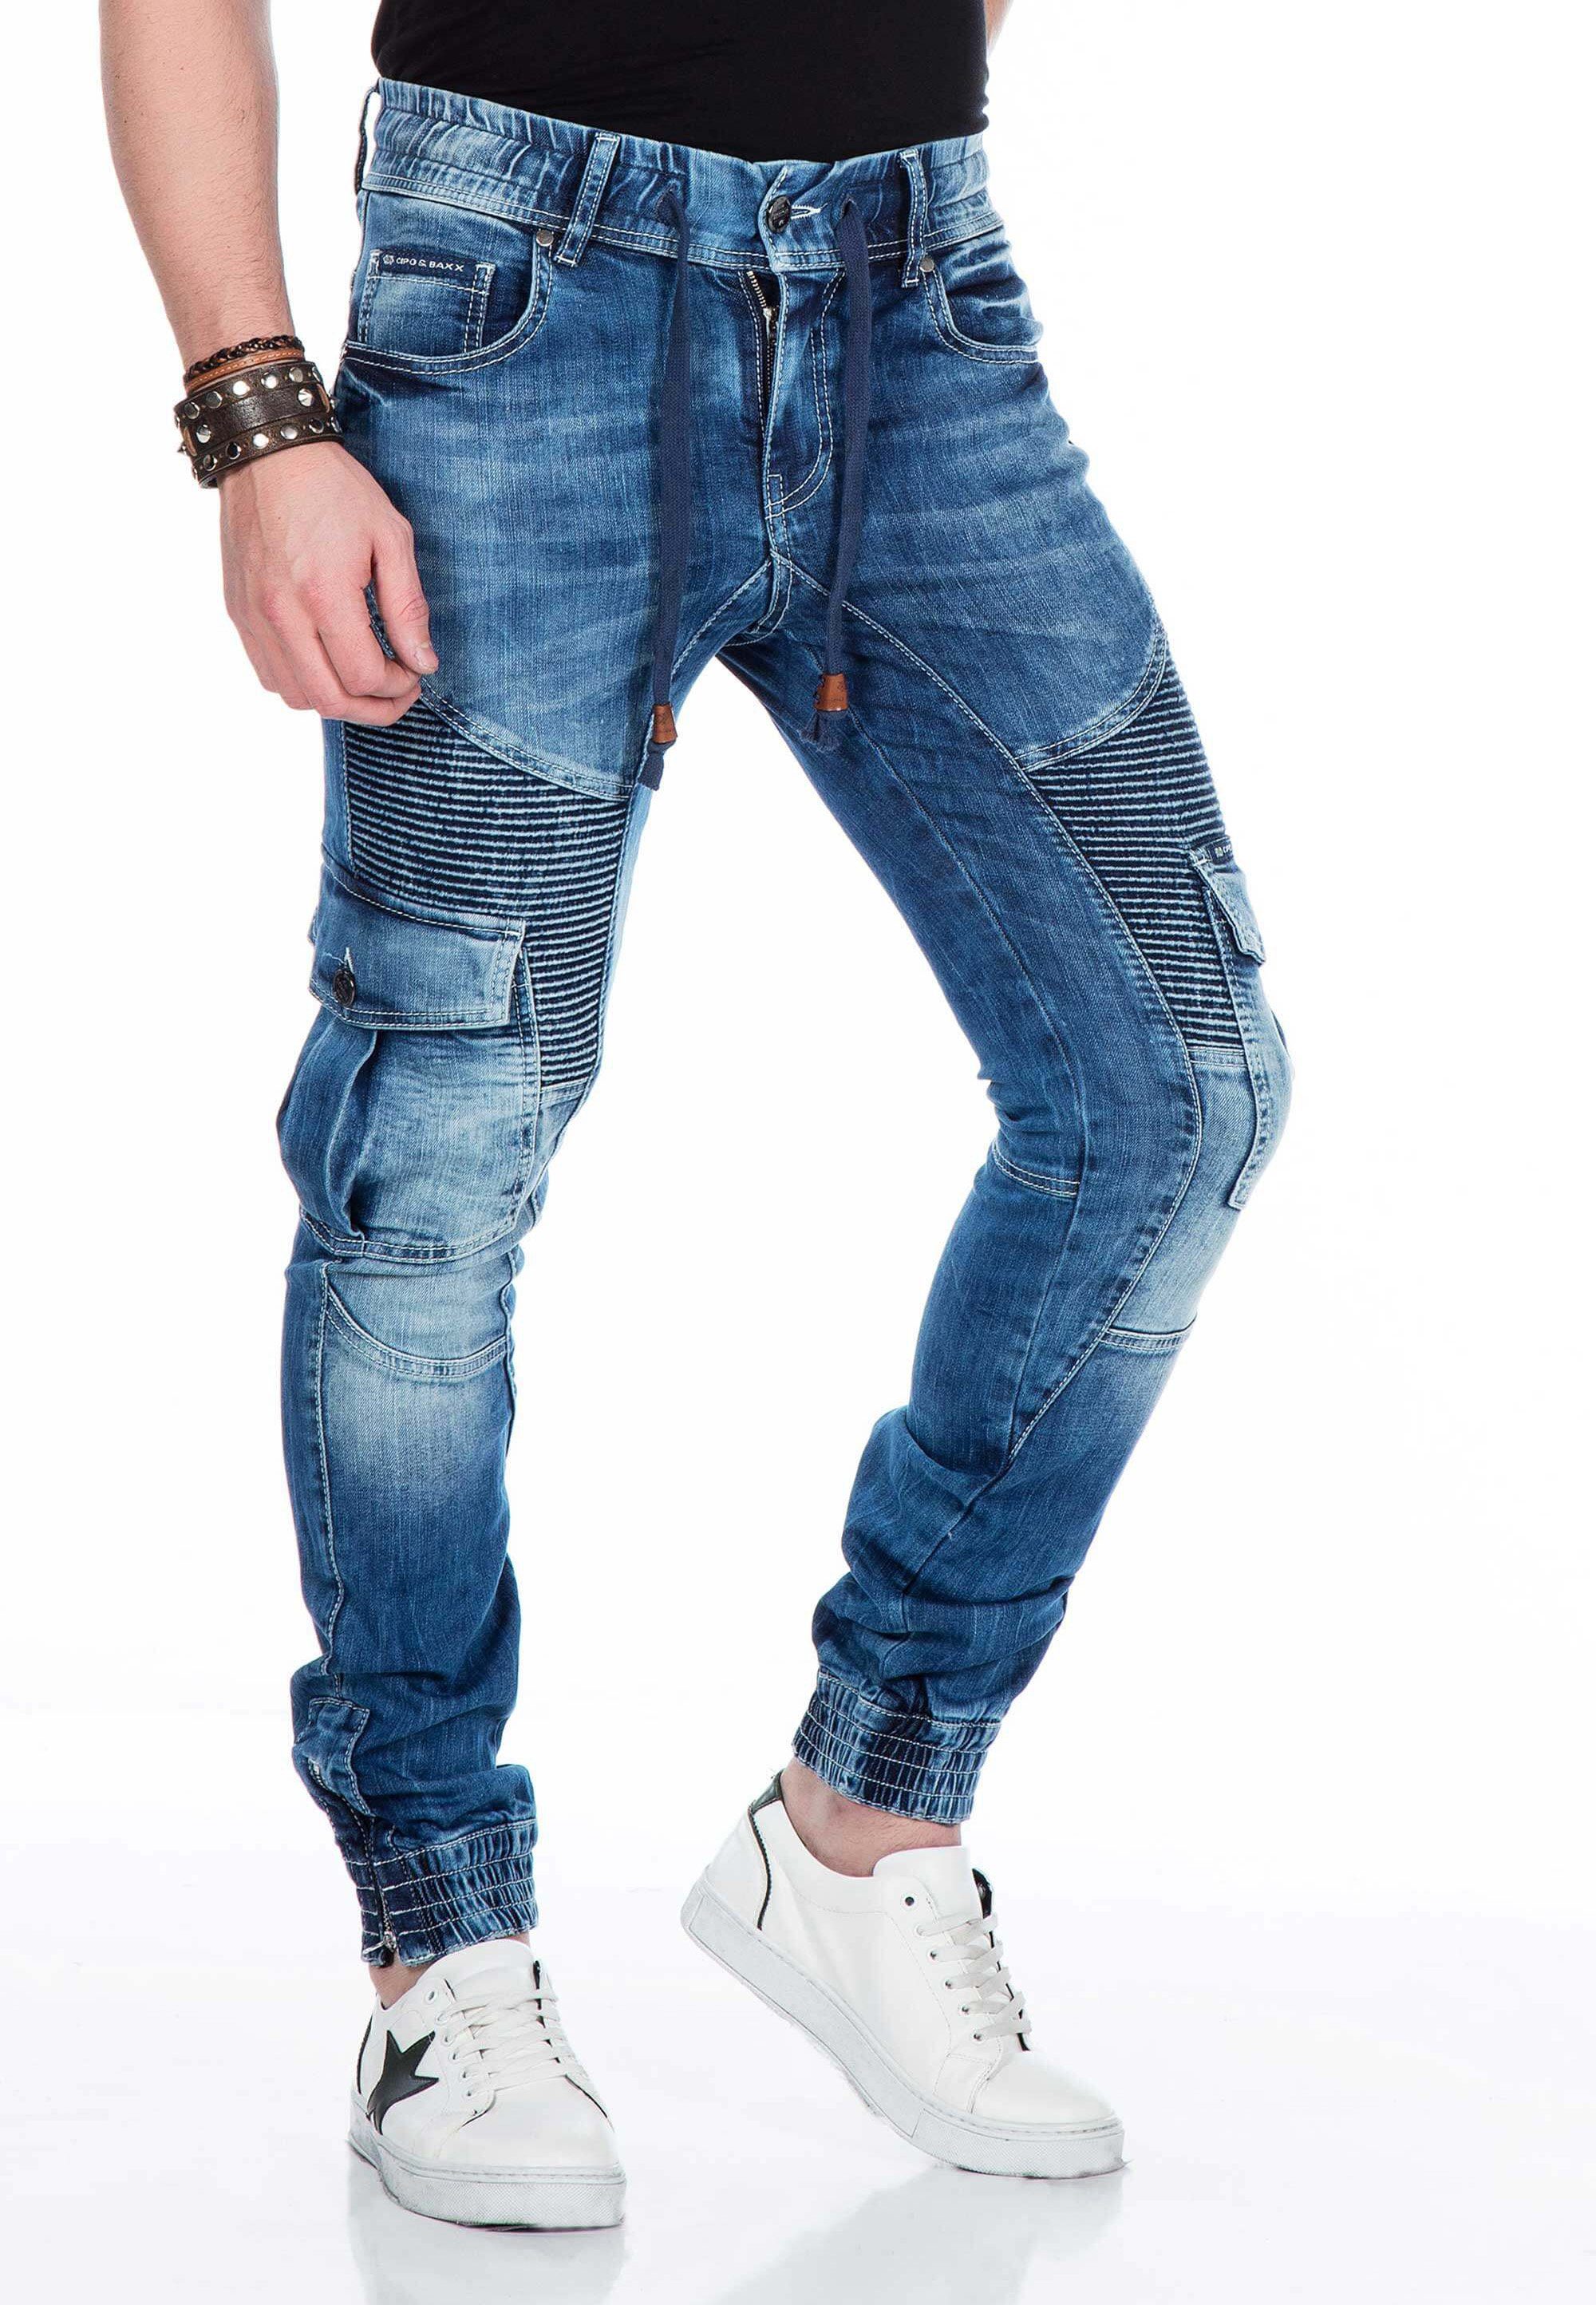 Baxx elastischen Jeans mit Cipo Saum & blau Bündchen Bequeme am